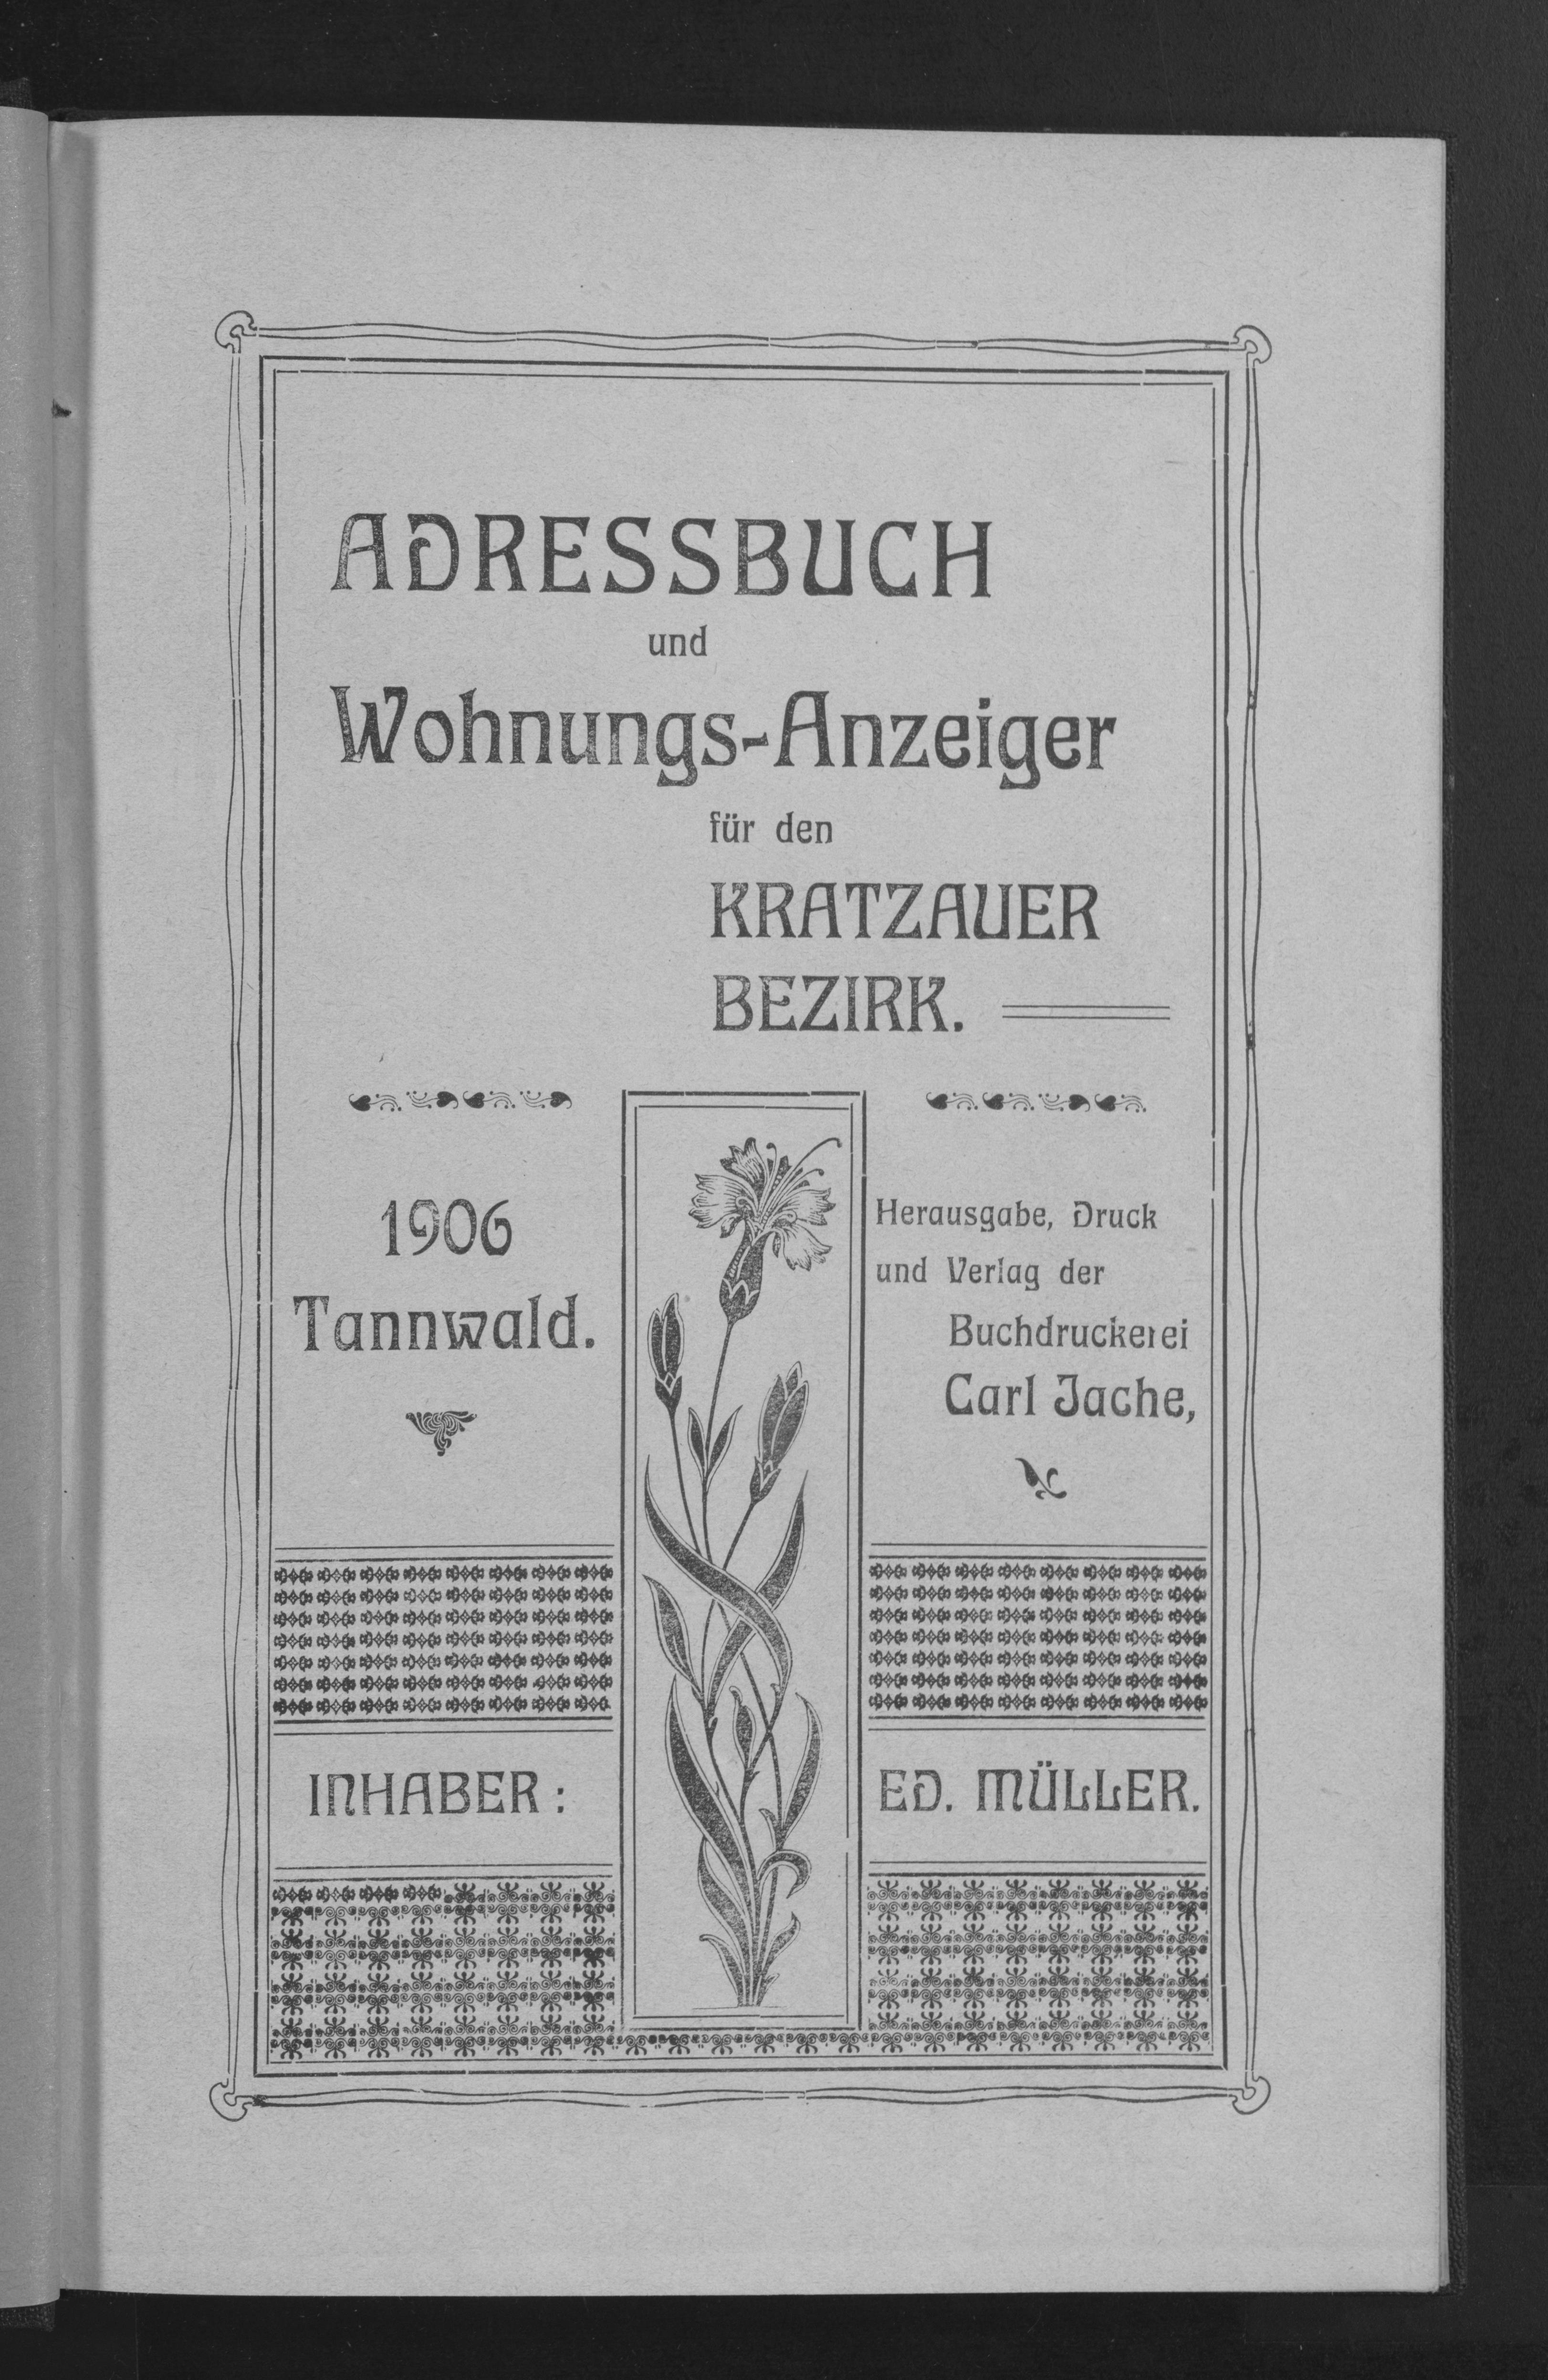 Adressbuch und Wohnungs-Anzeiger für den Kratzauer Bezirk 1906